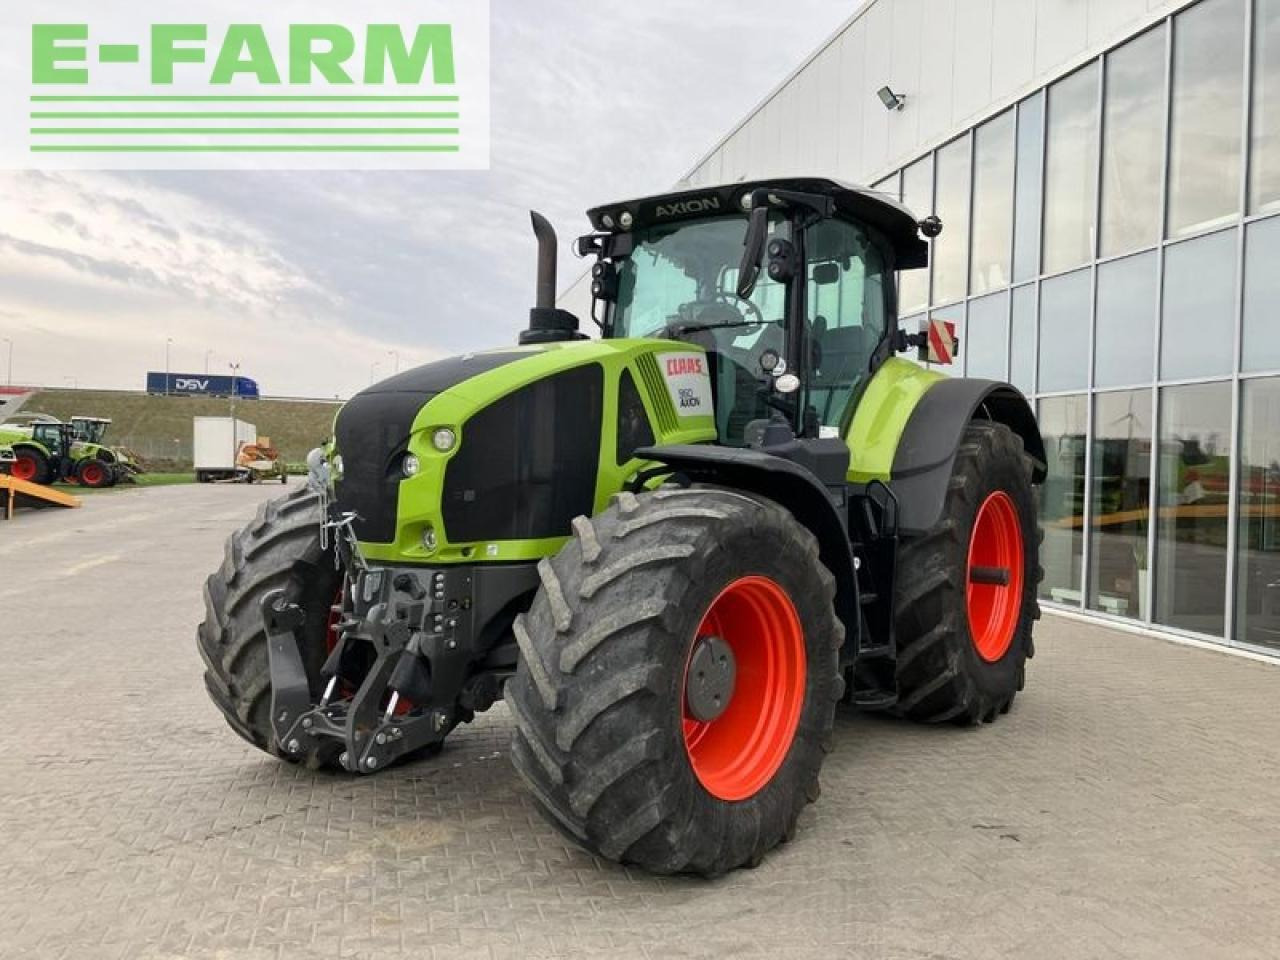 Farm tractor CLAAS axion 960